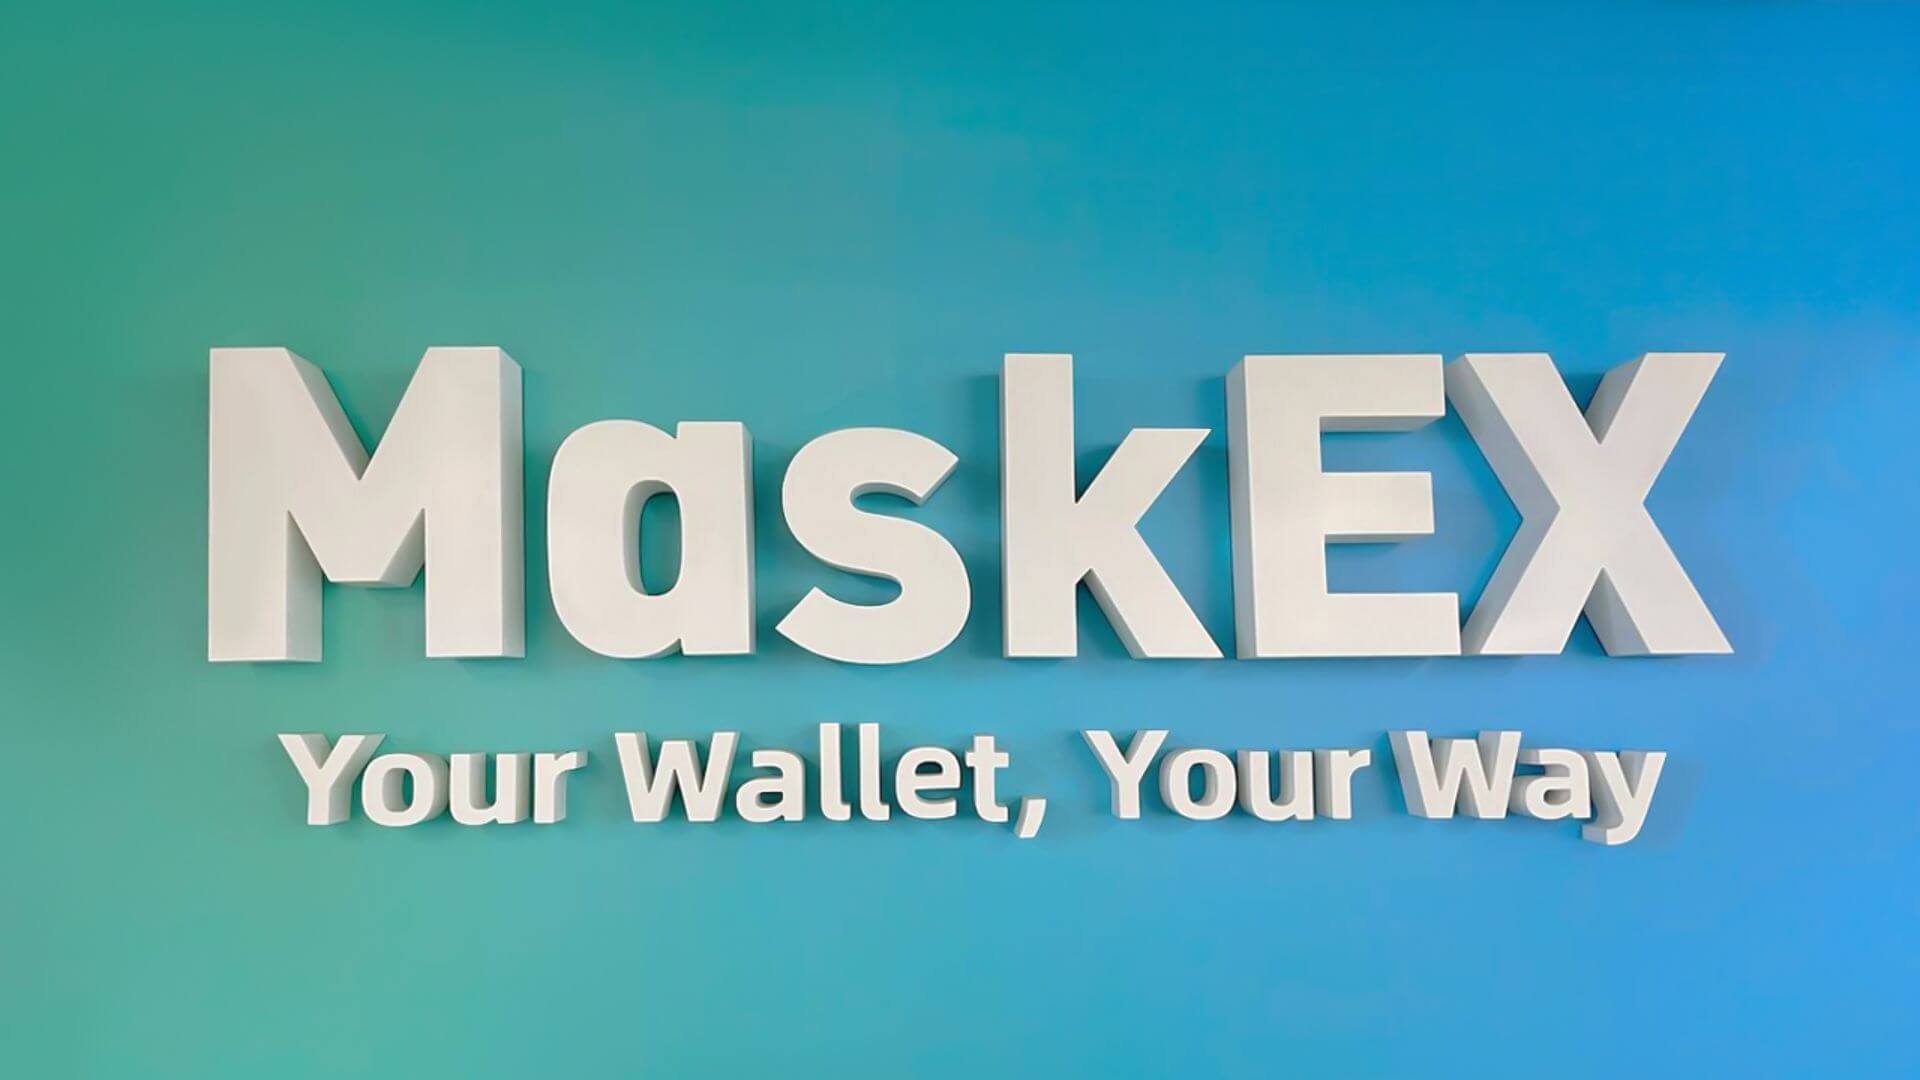 Sàn giao dịch tiền điện tử MaskEX nhận được sự chấp thuận ban đầu từ VARA để ra mắt tại UAE